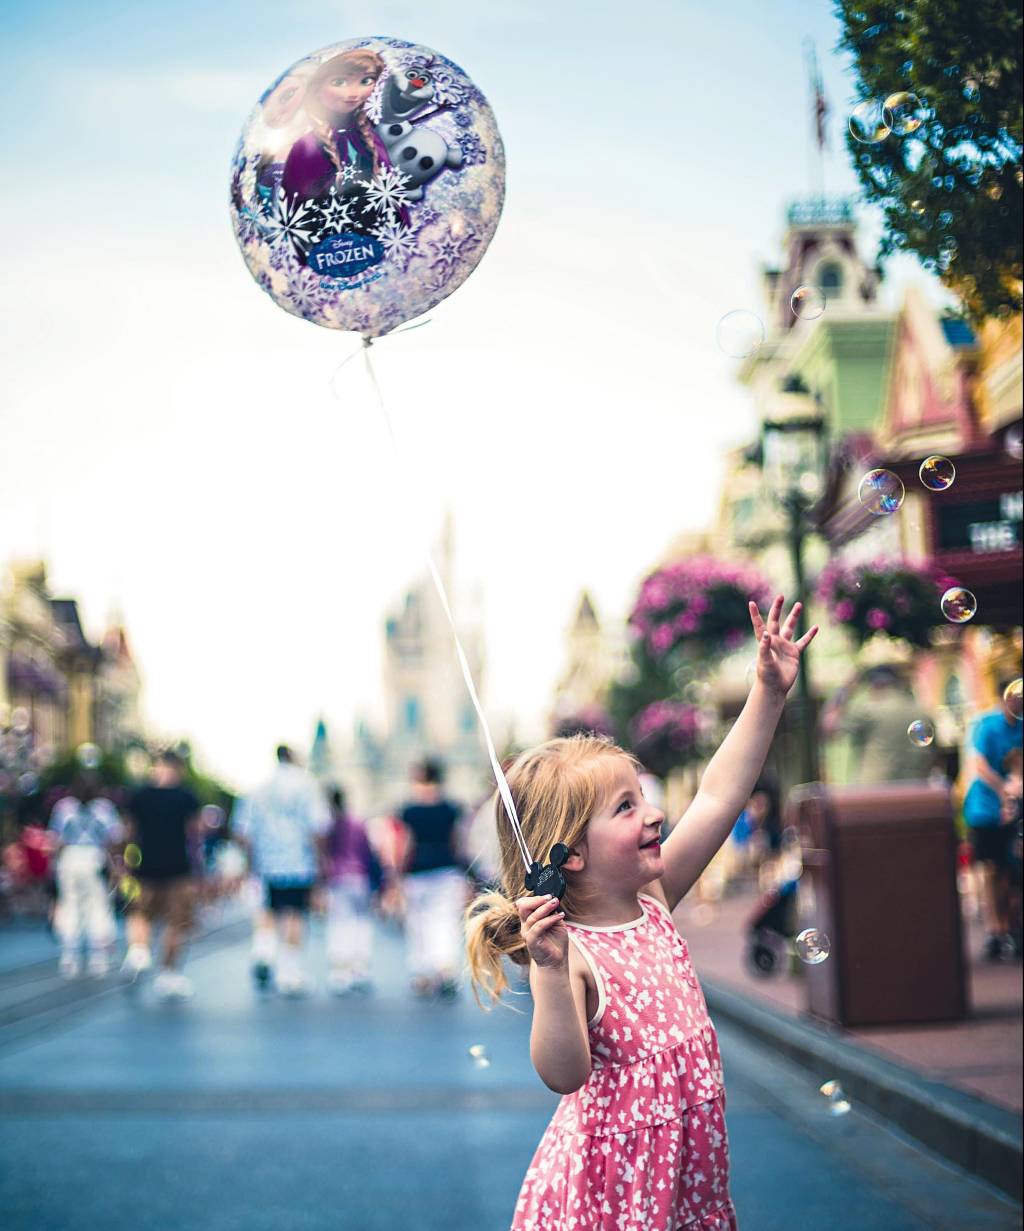 Menina segura um balão com uma imagem do filme "Frozen", enquanto tenta agarrar bolhas de sabão